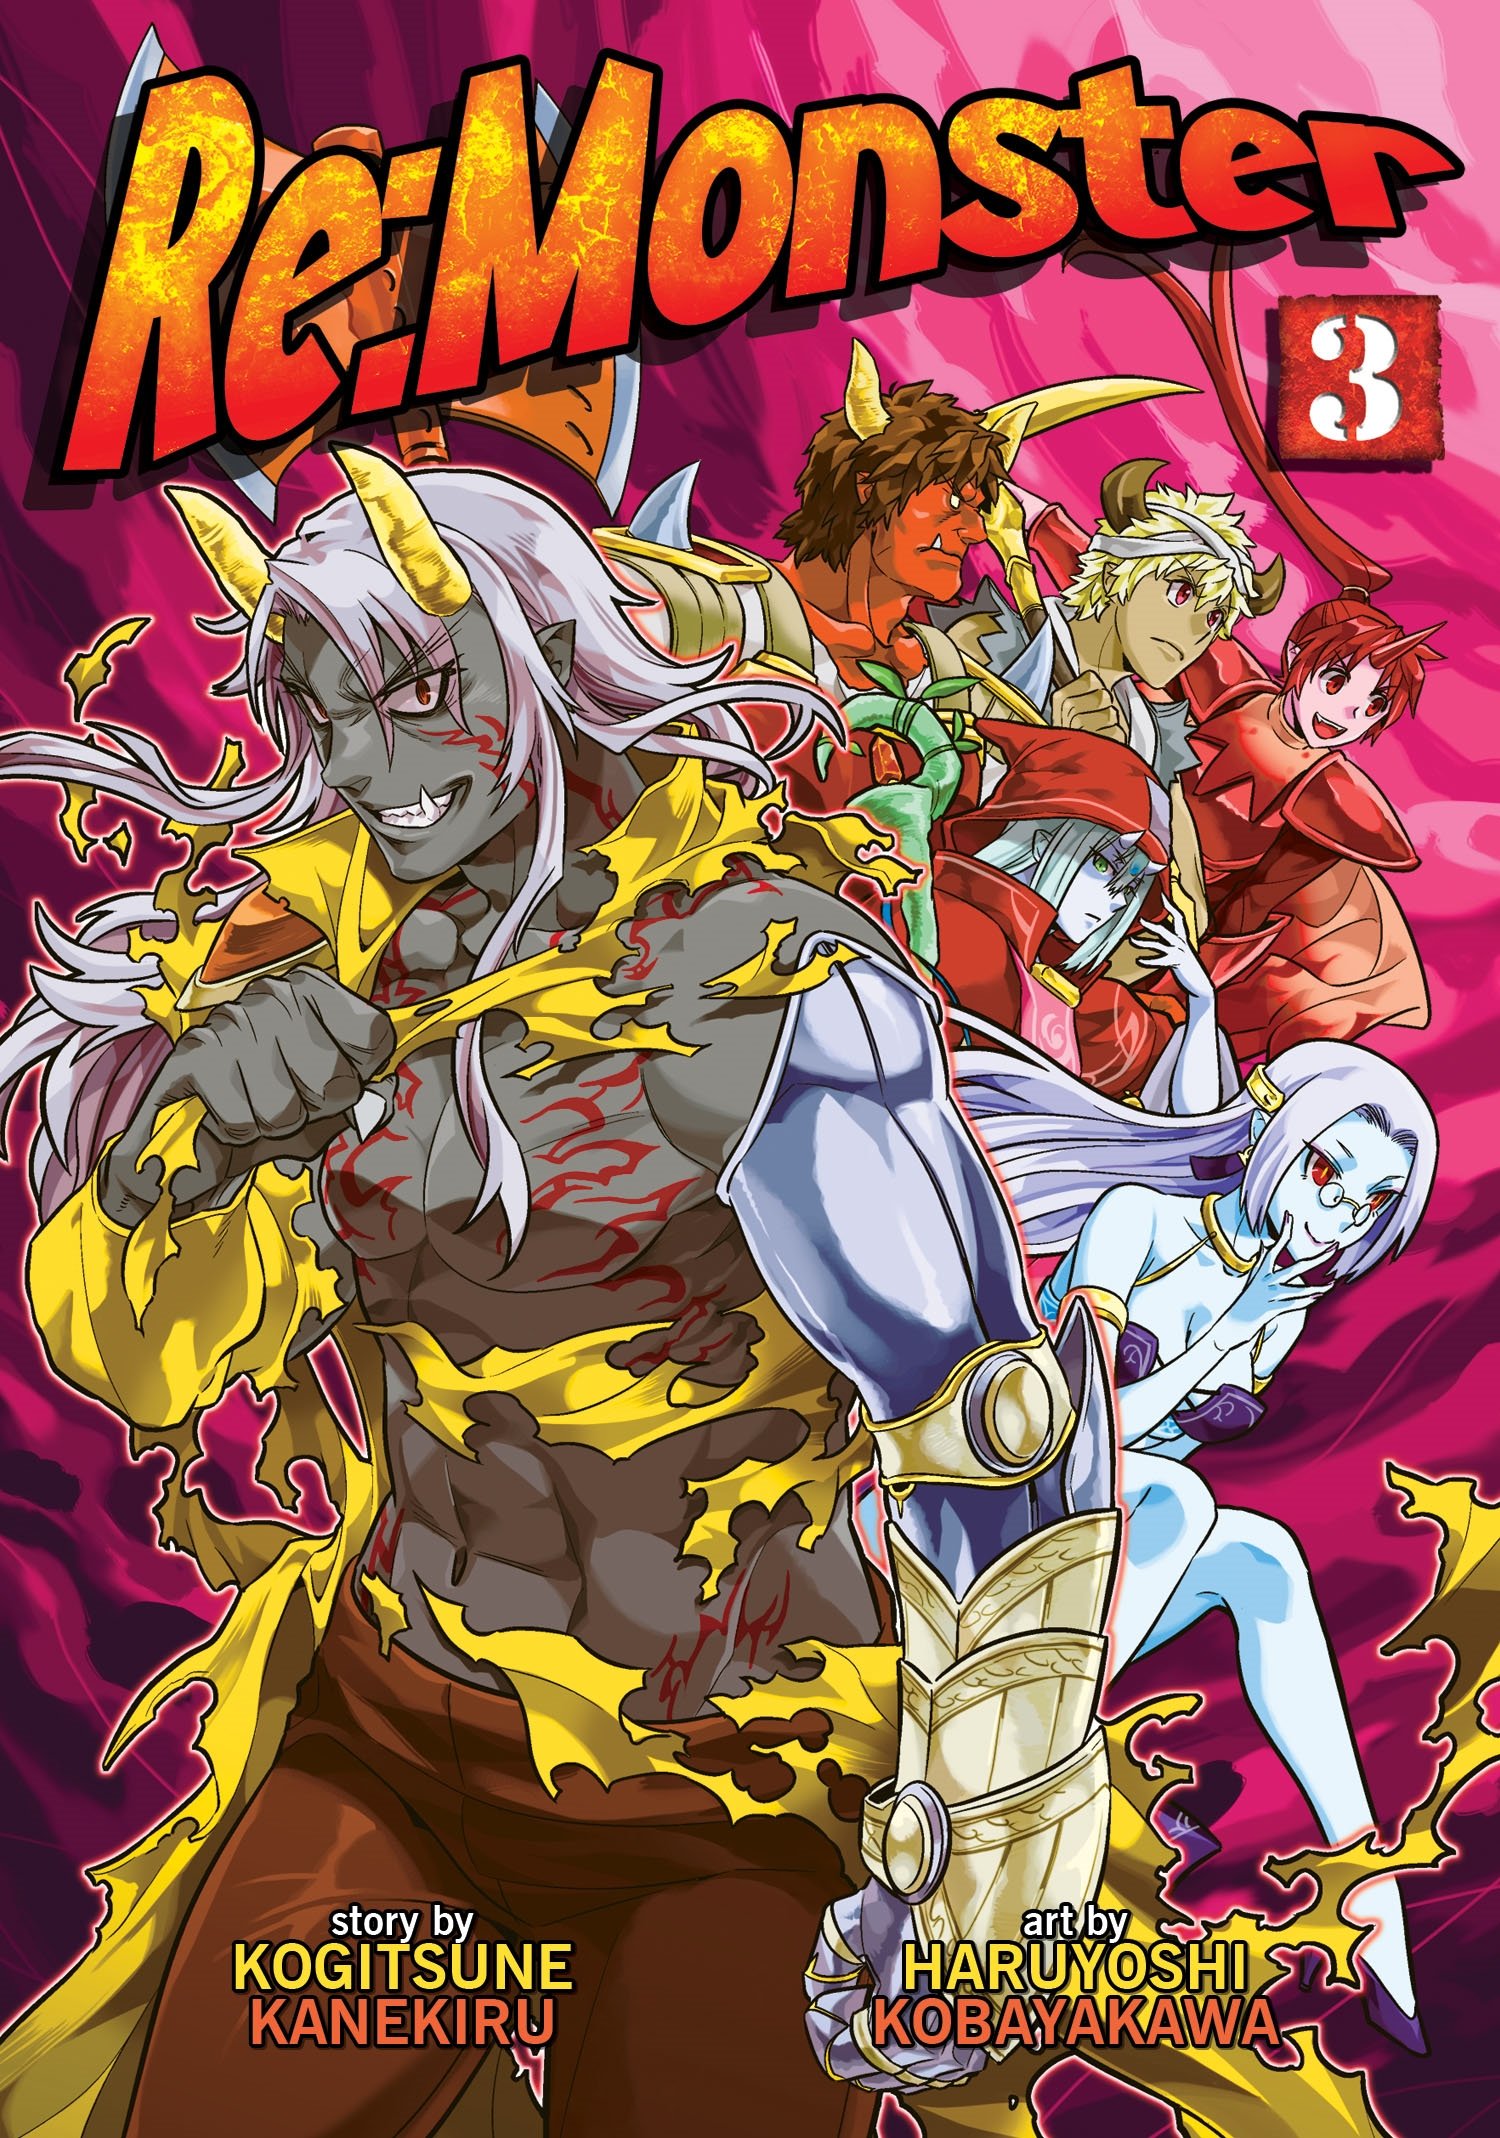 Manga Volume 3 | Re:Monster Wiki | Fandom